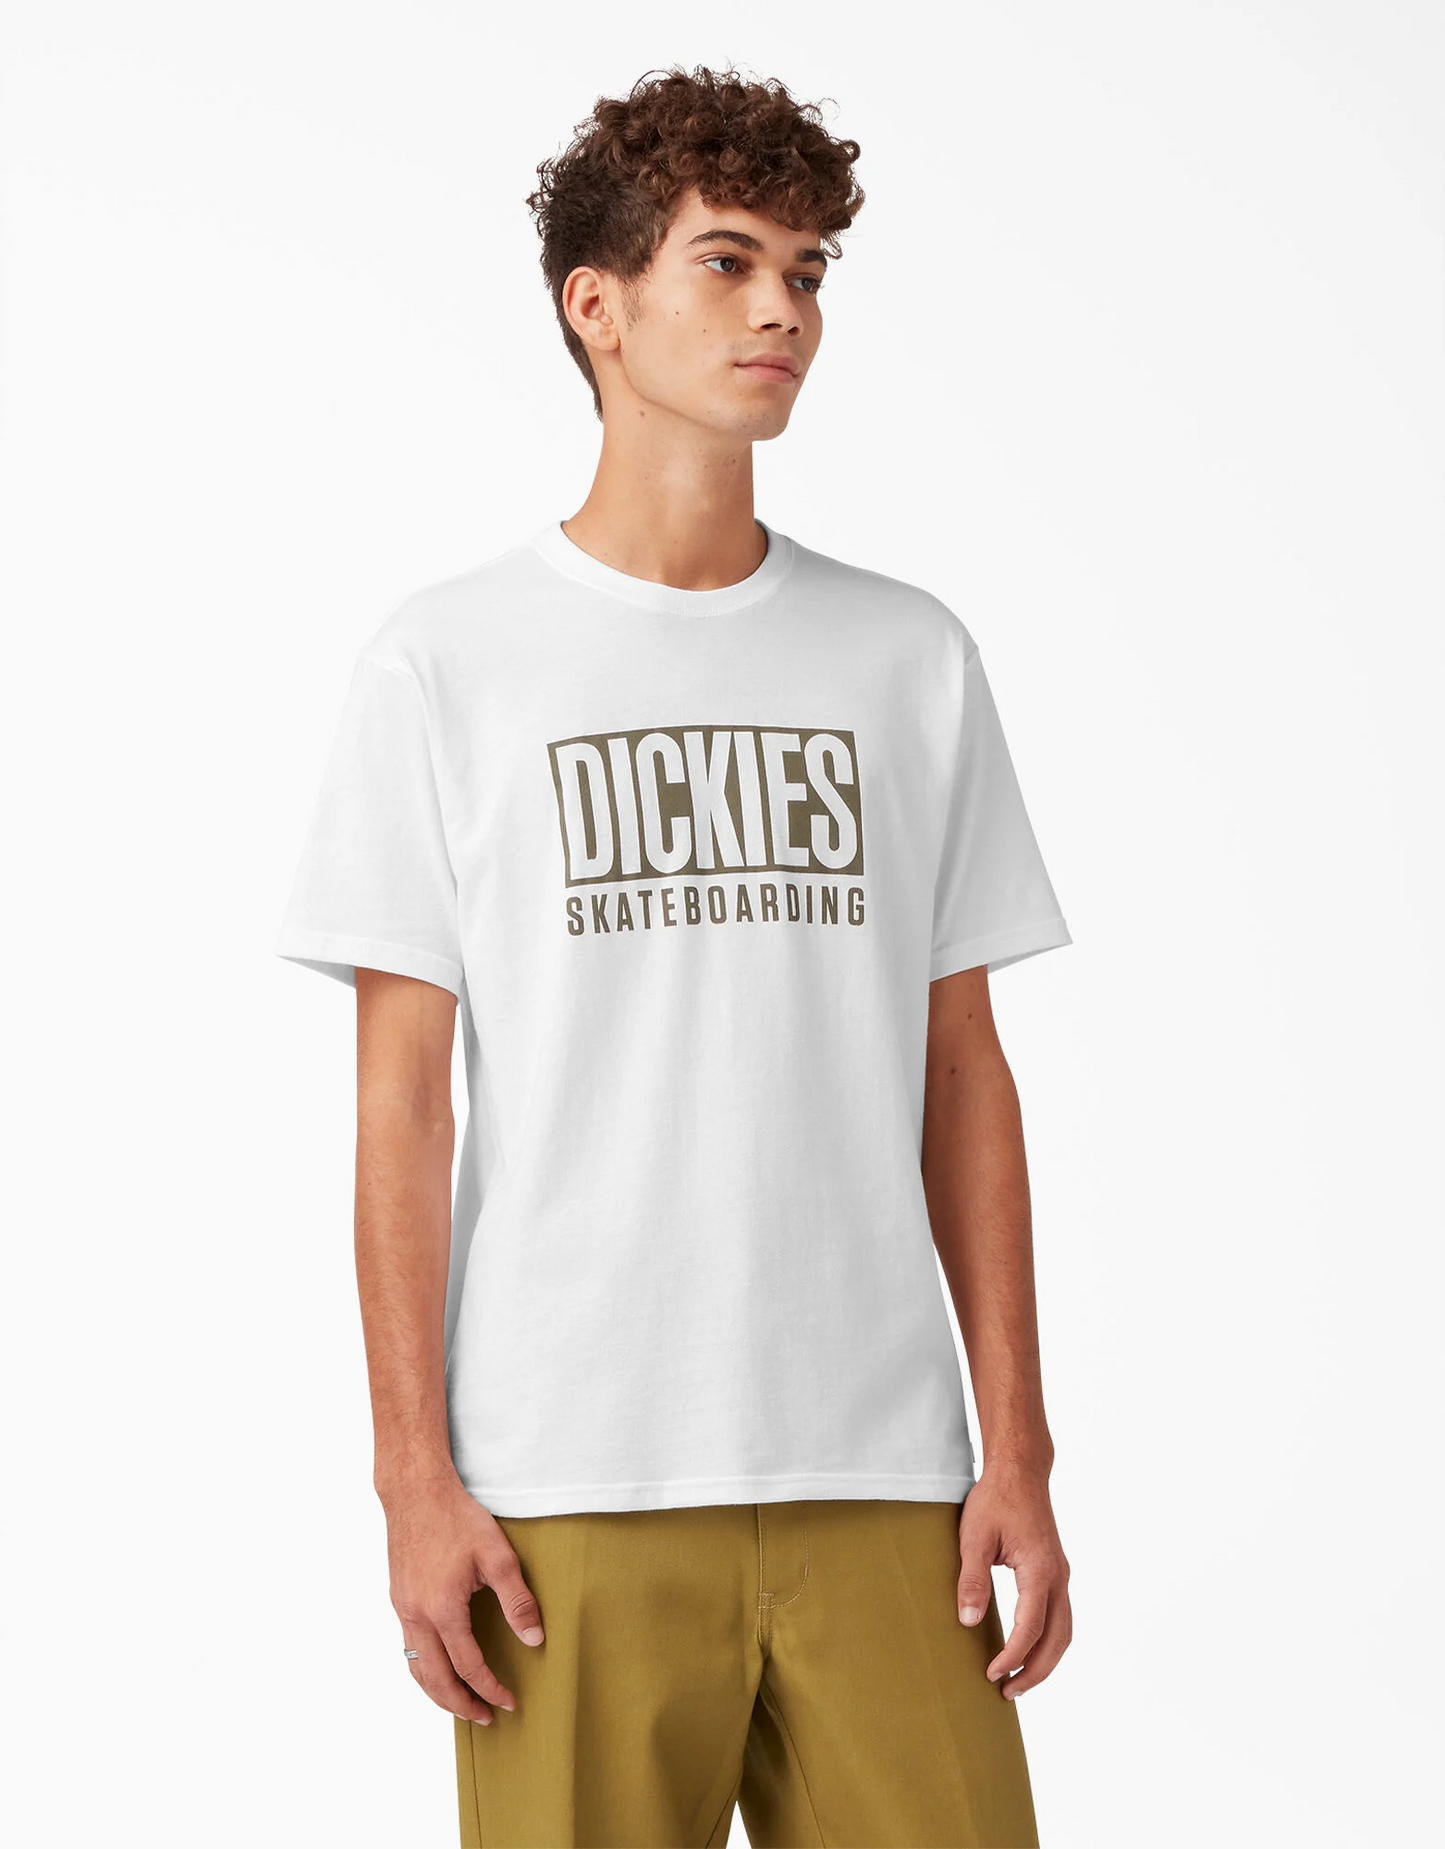 Dickies Skateboarding Relief Short Sleeve T-Shirt White